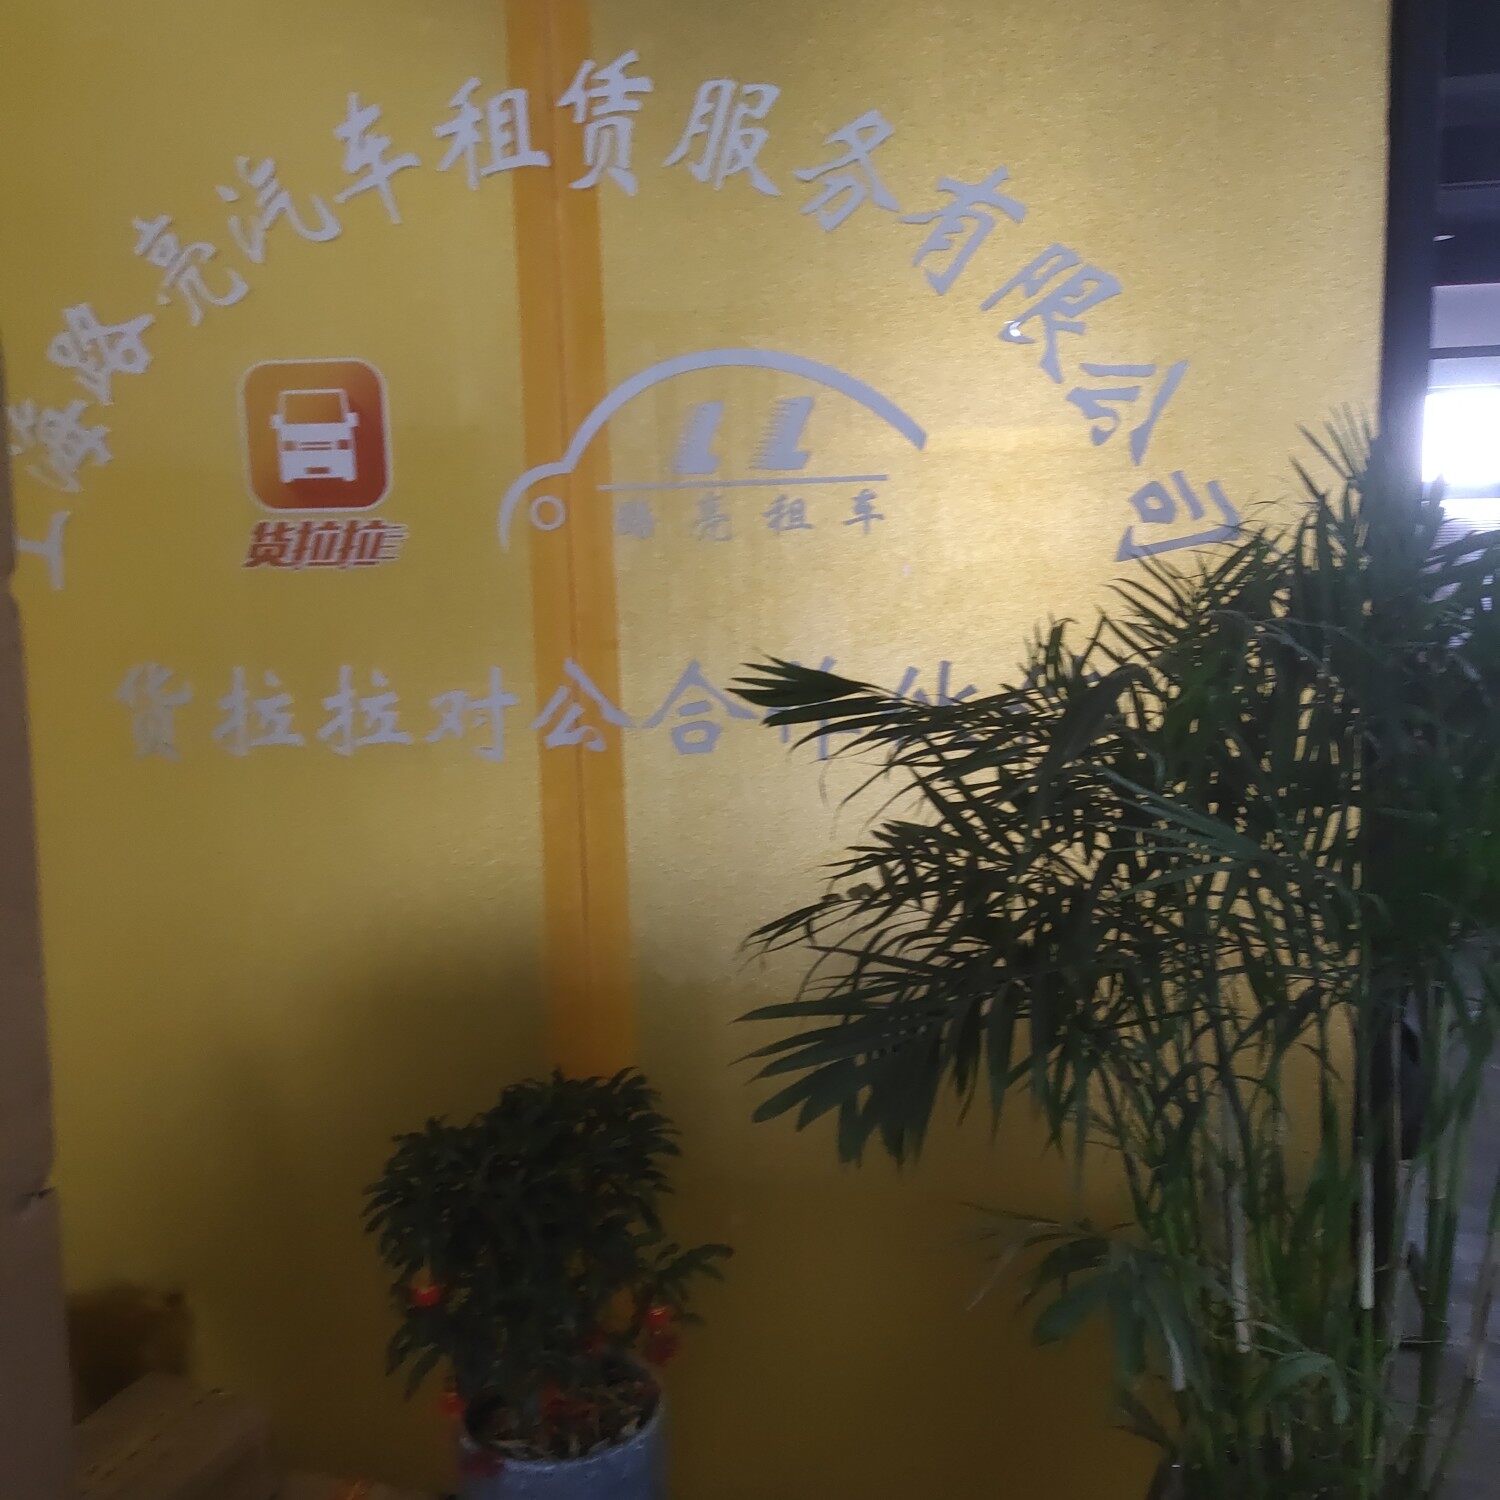 上海路亮汽车租赁服务有限公司logo